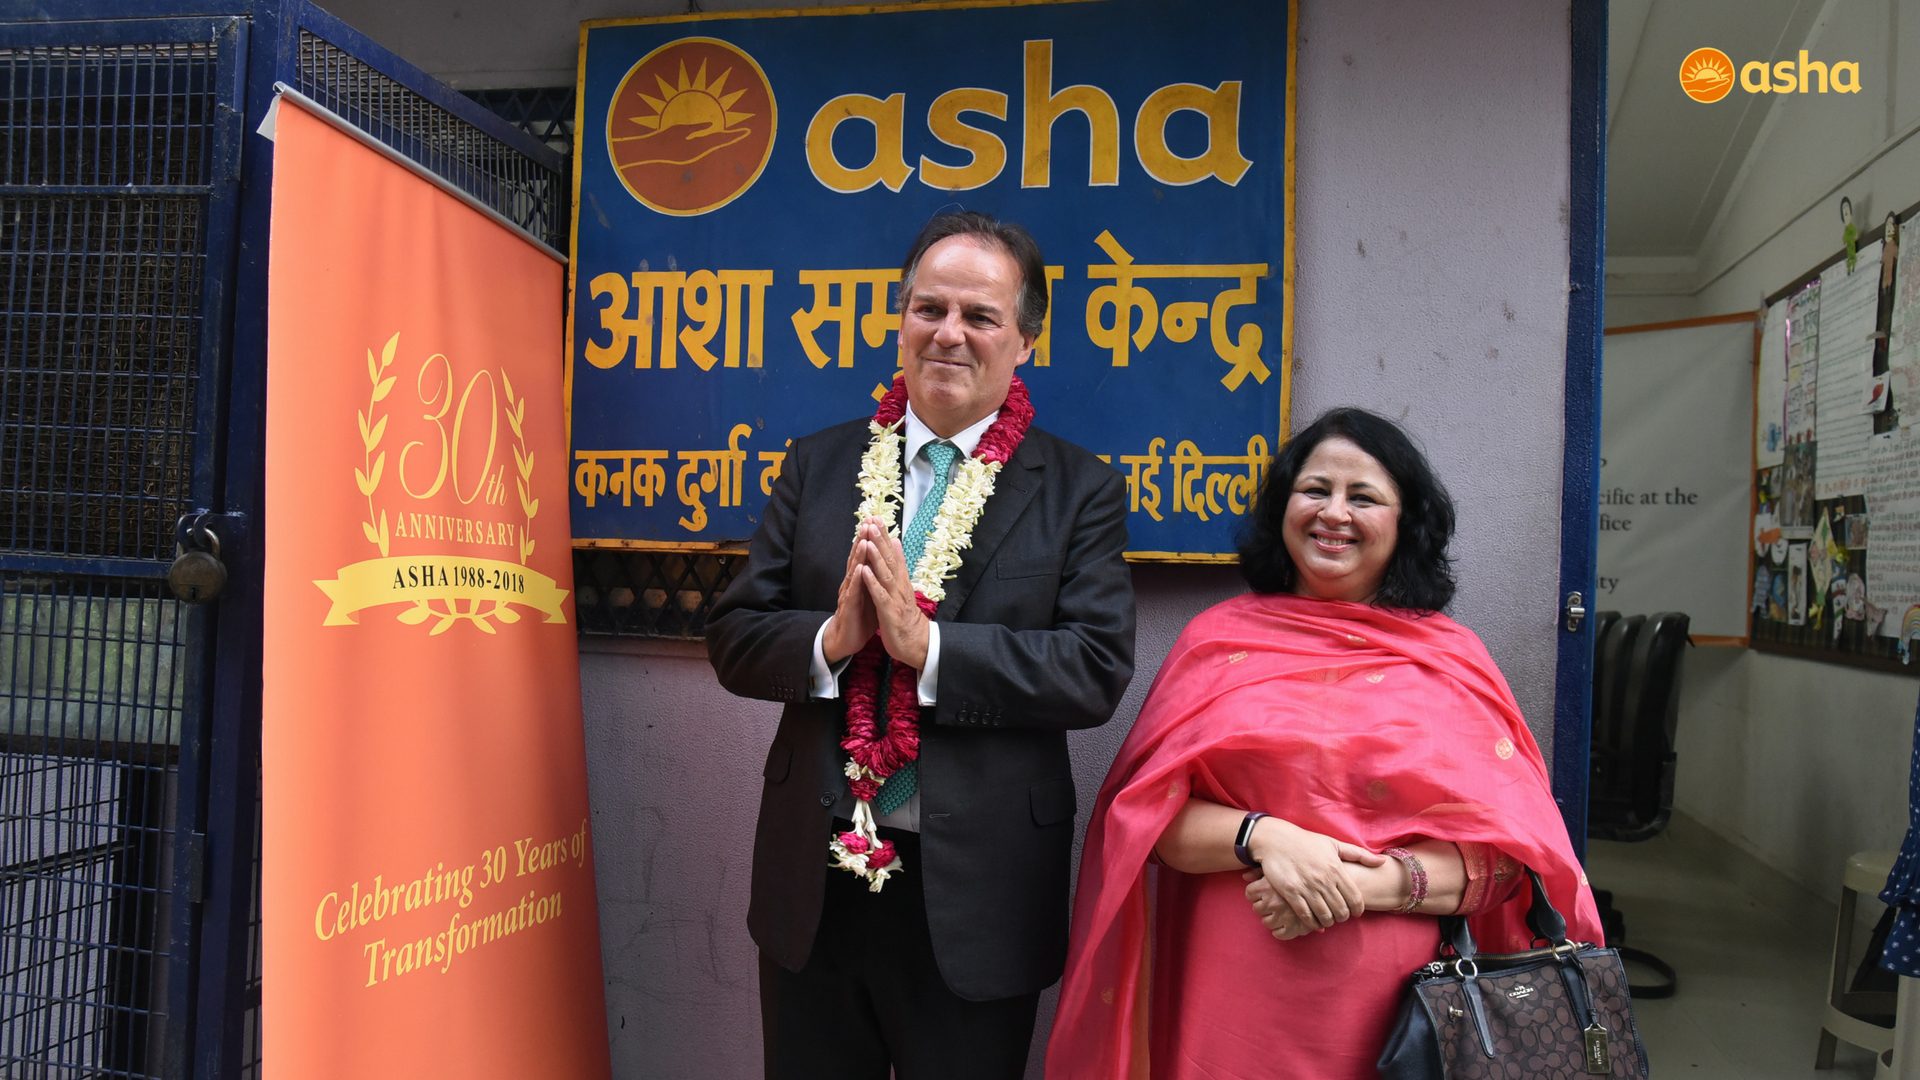 Tribute to Dr Kiran Martin by Asha Graduate Usha